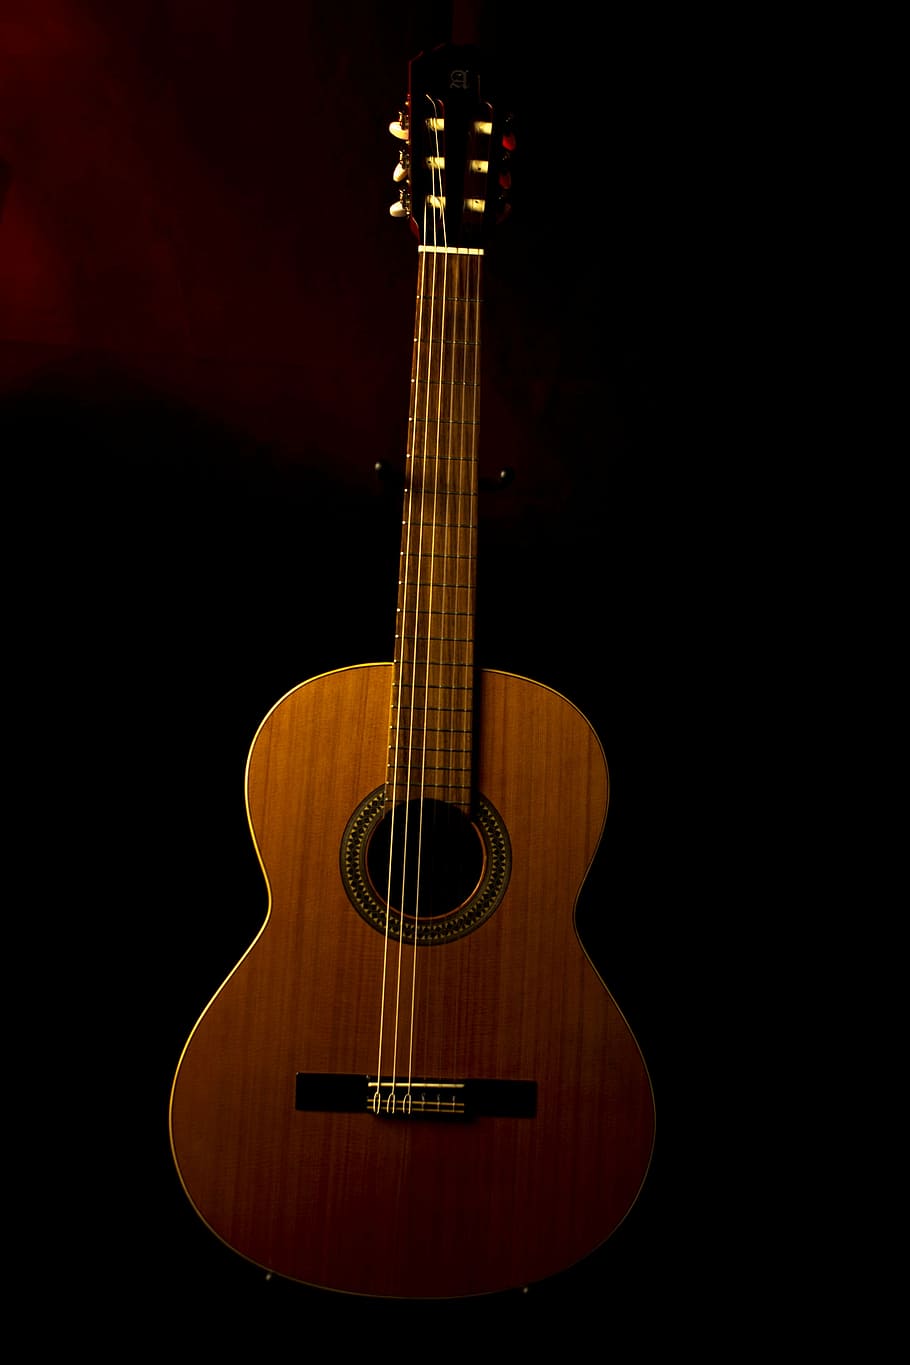 marrom, acústico, guitarra, preto, superfície, música, guitarra espanhola, instrumento, tocando guitarra, instrumento de cordas